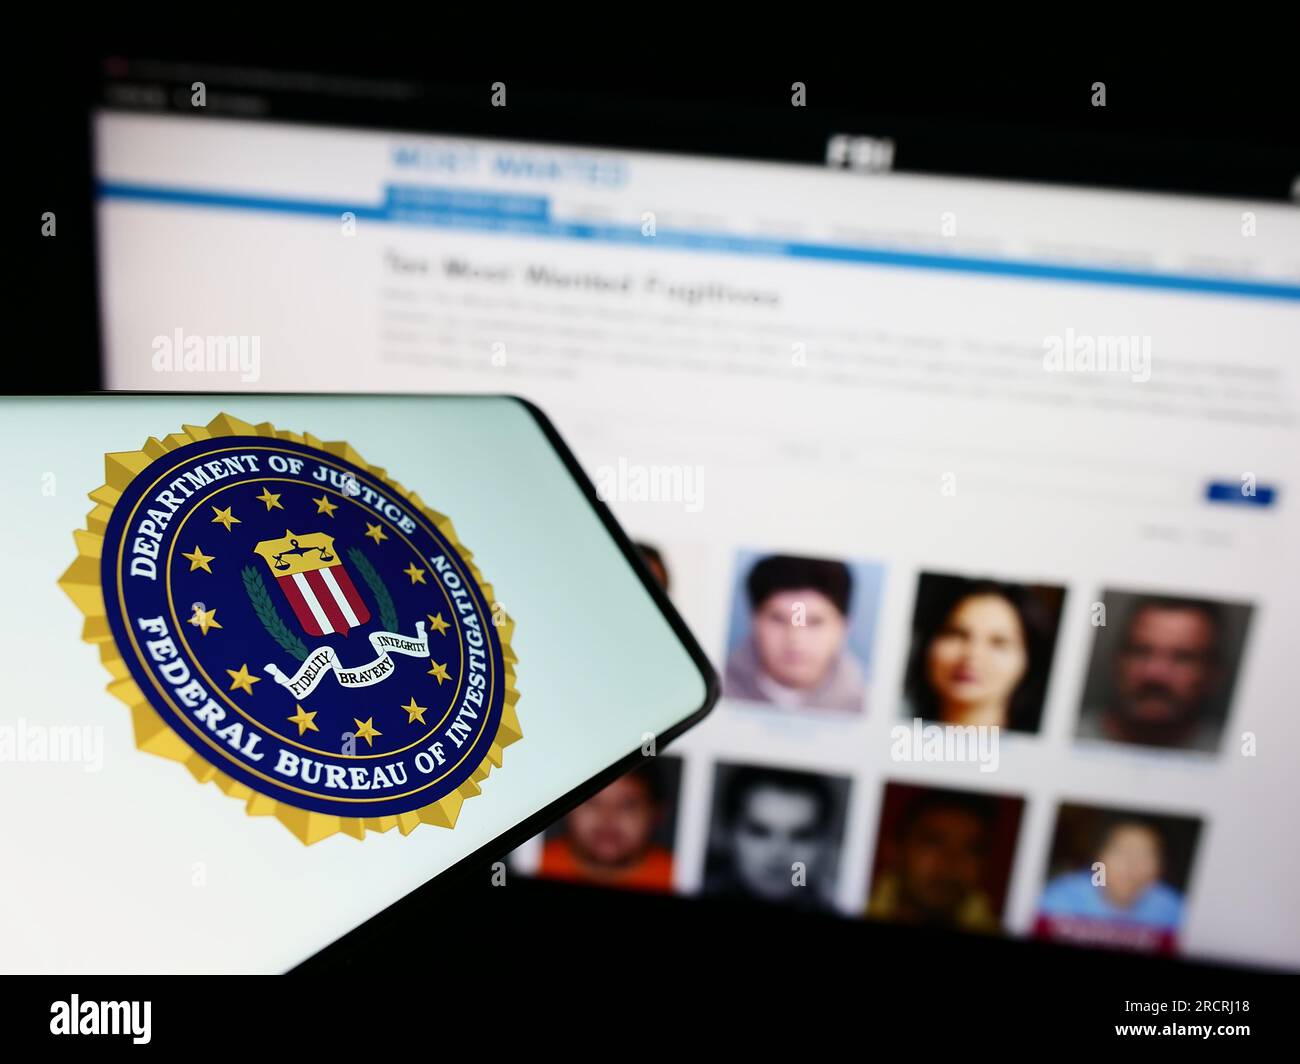 Téléphone portable avec sceau du Bureau fédéral d'enquête (FBI) des États-Unis sur l'écran devant le site Web. Concentrez-vous sur le centre de l'écran du téléphone. Banque D'Images